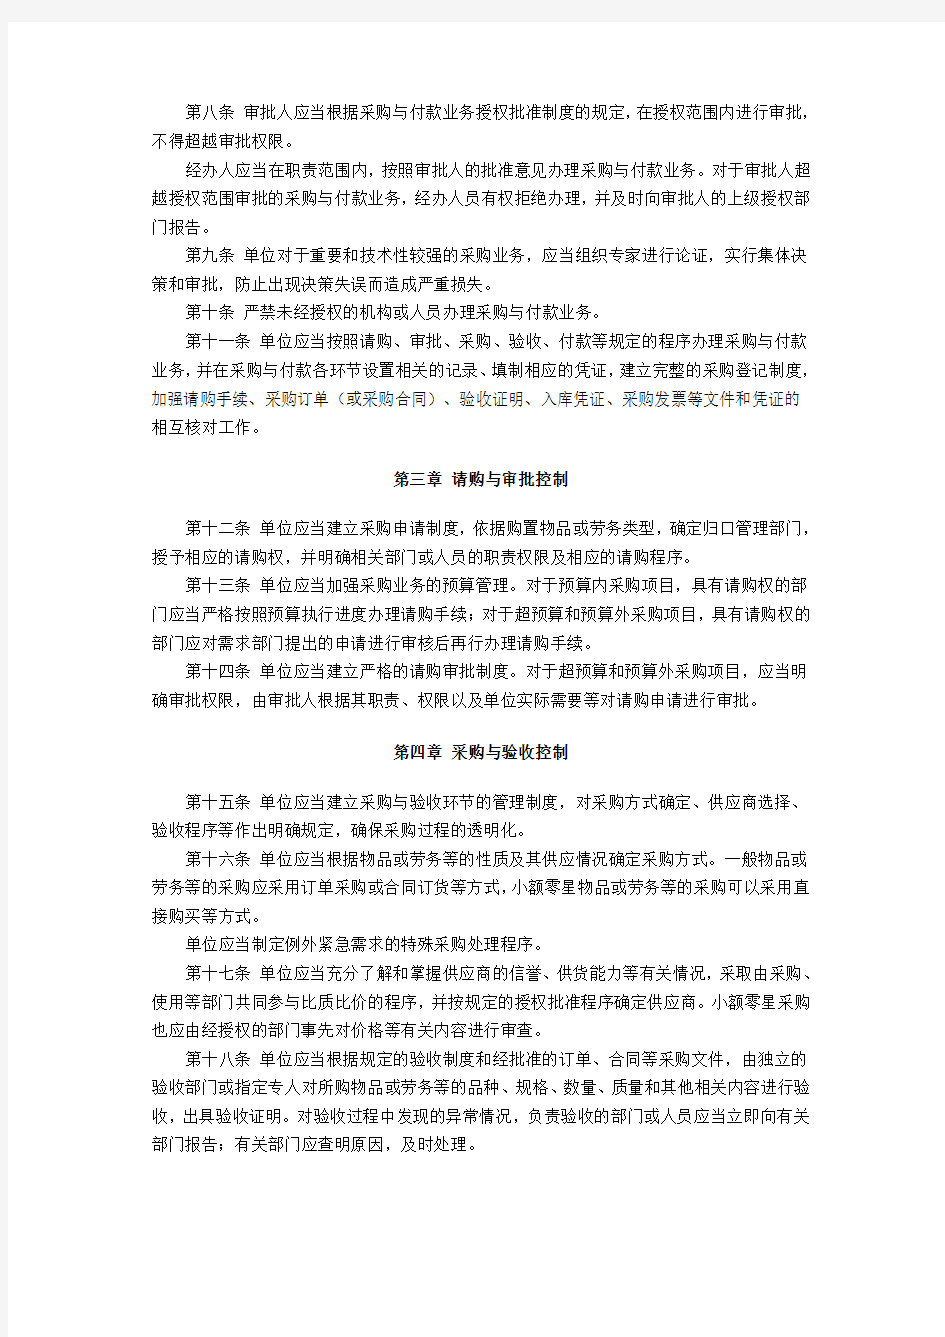 《财务会计》王宗江 课程资源 电子教案 内部会计控制规范——采购与付款(试行)